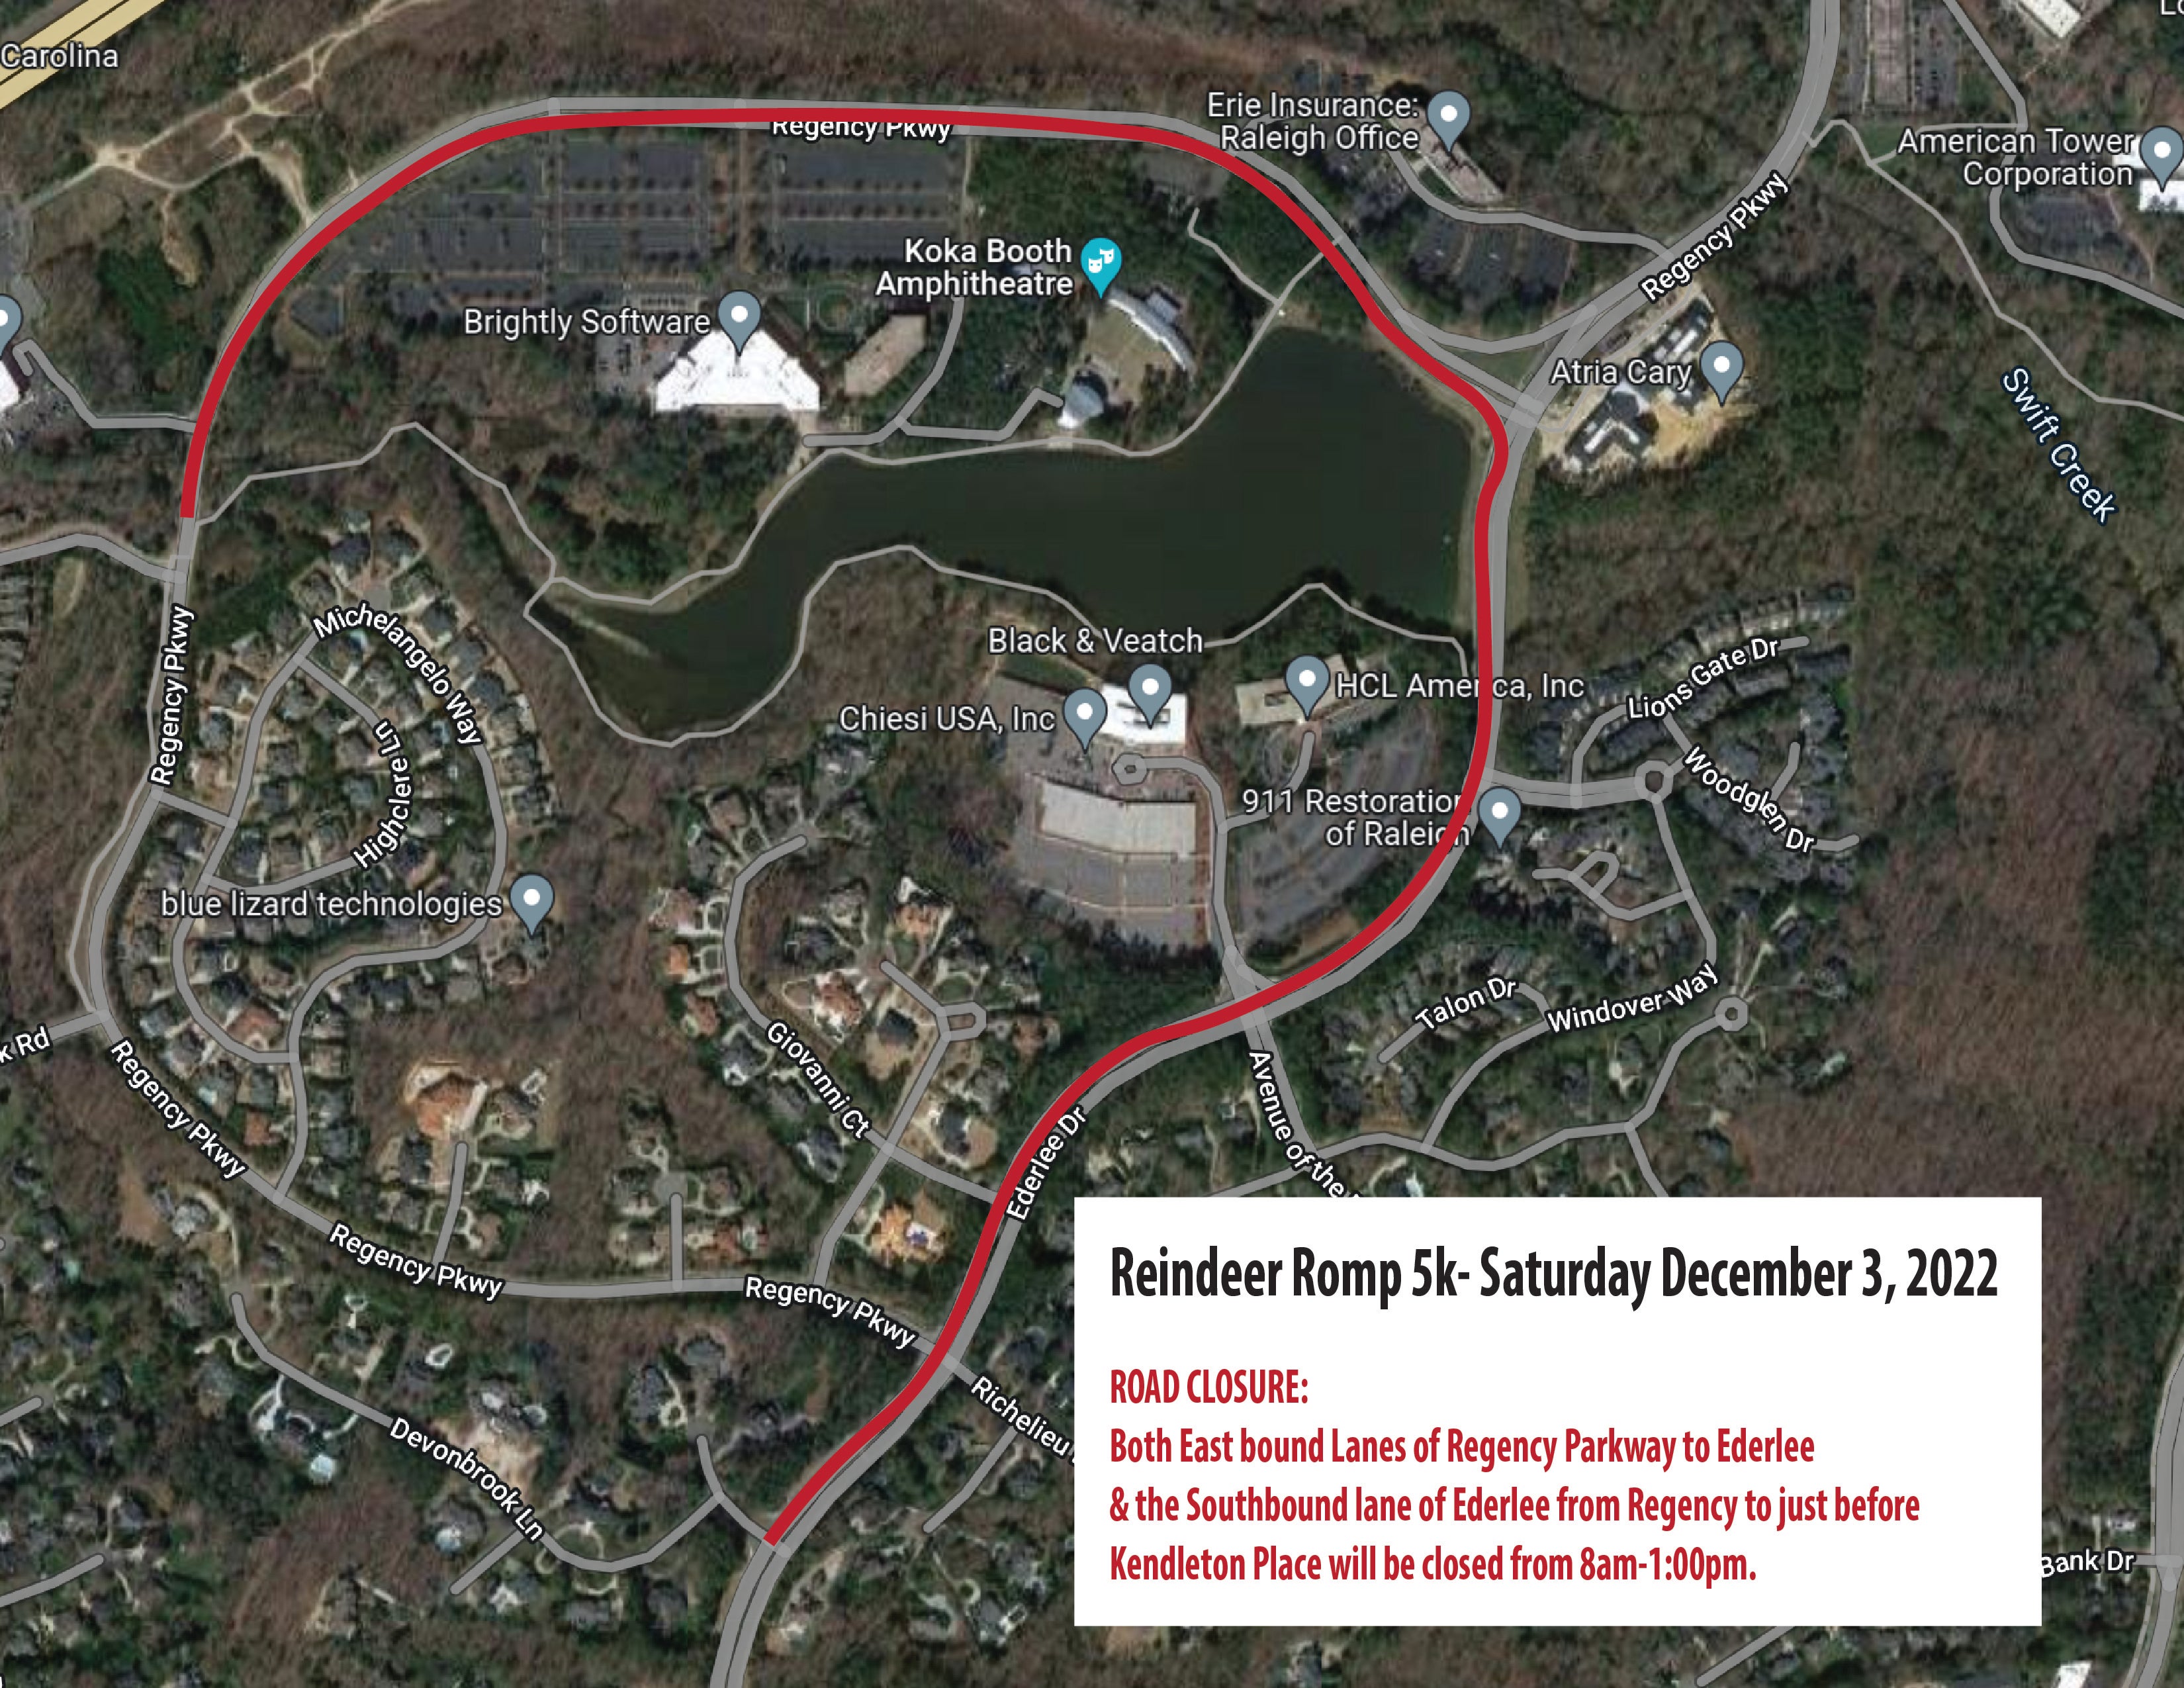 2022 Reindeer Romp Road Closure Map.jpg